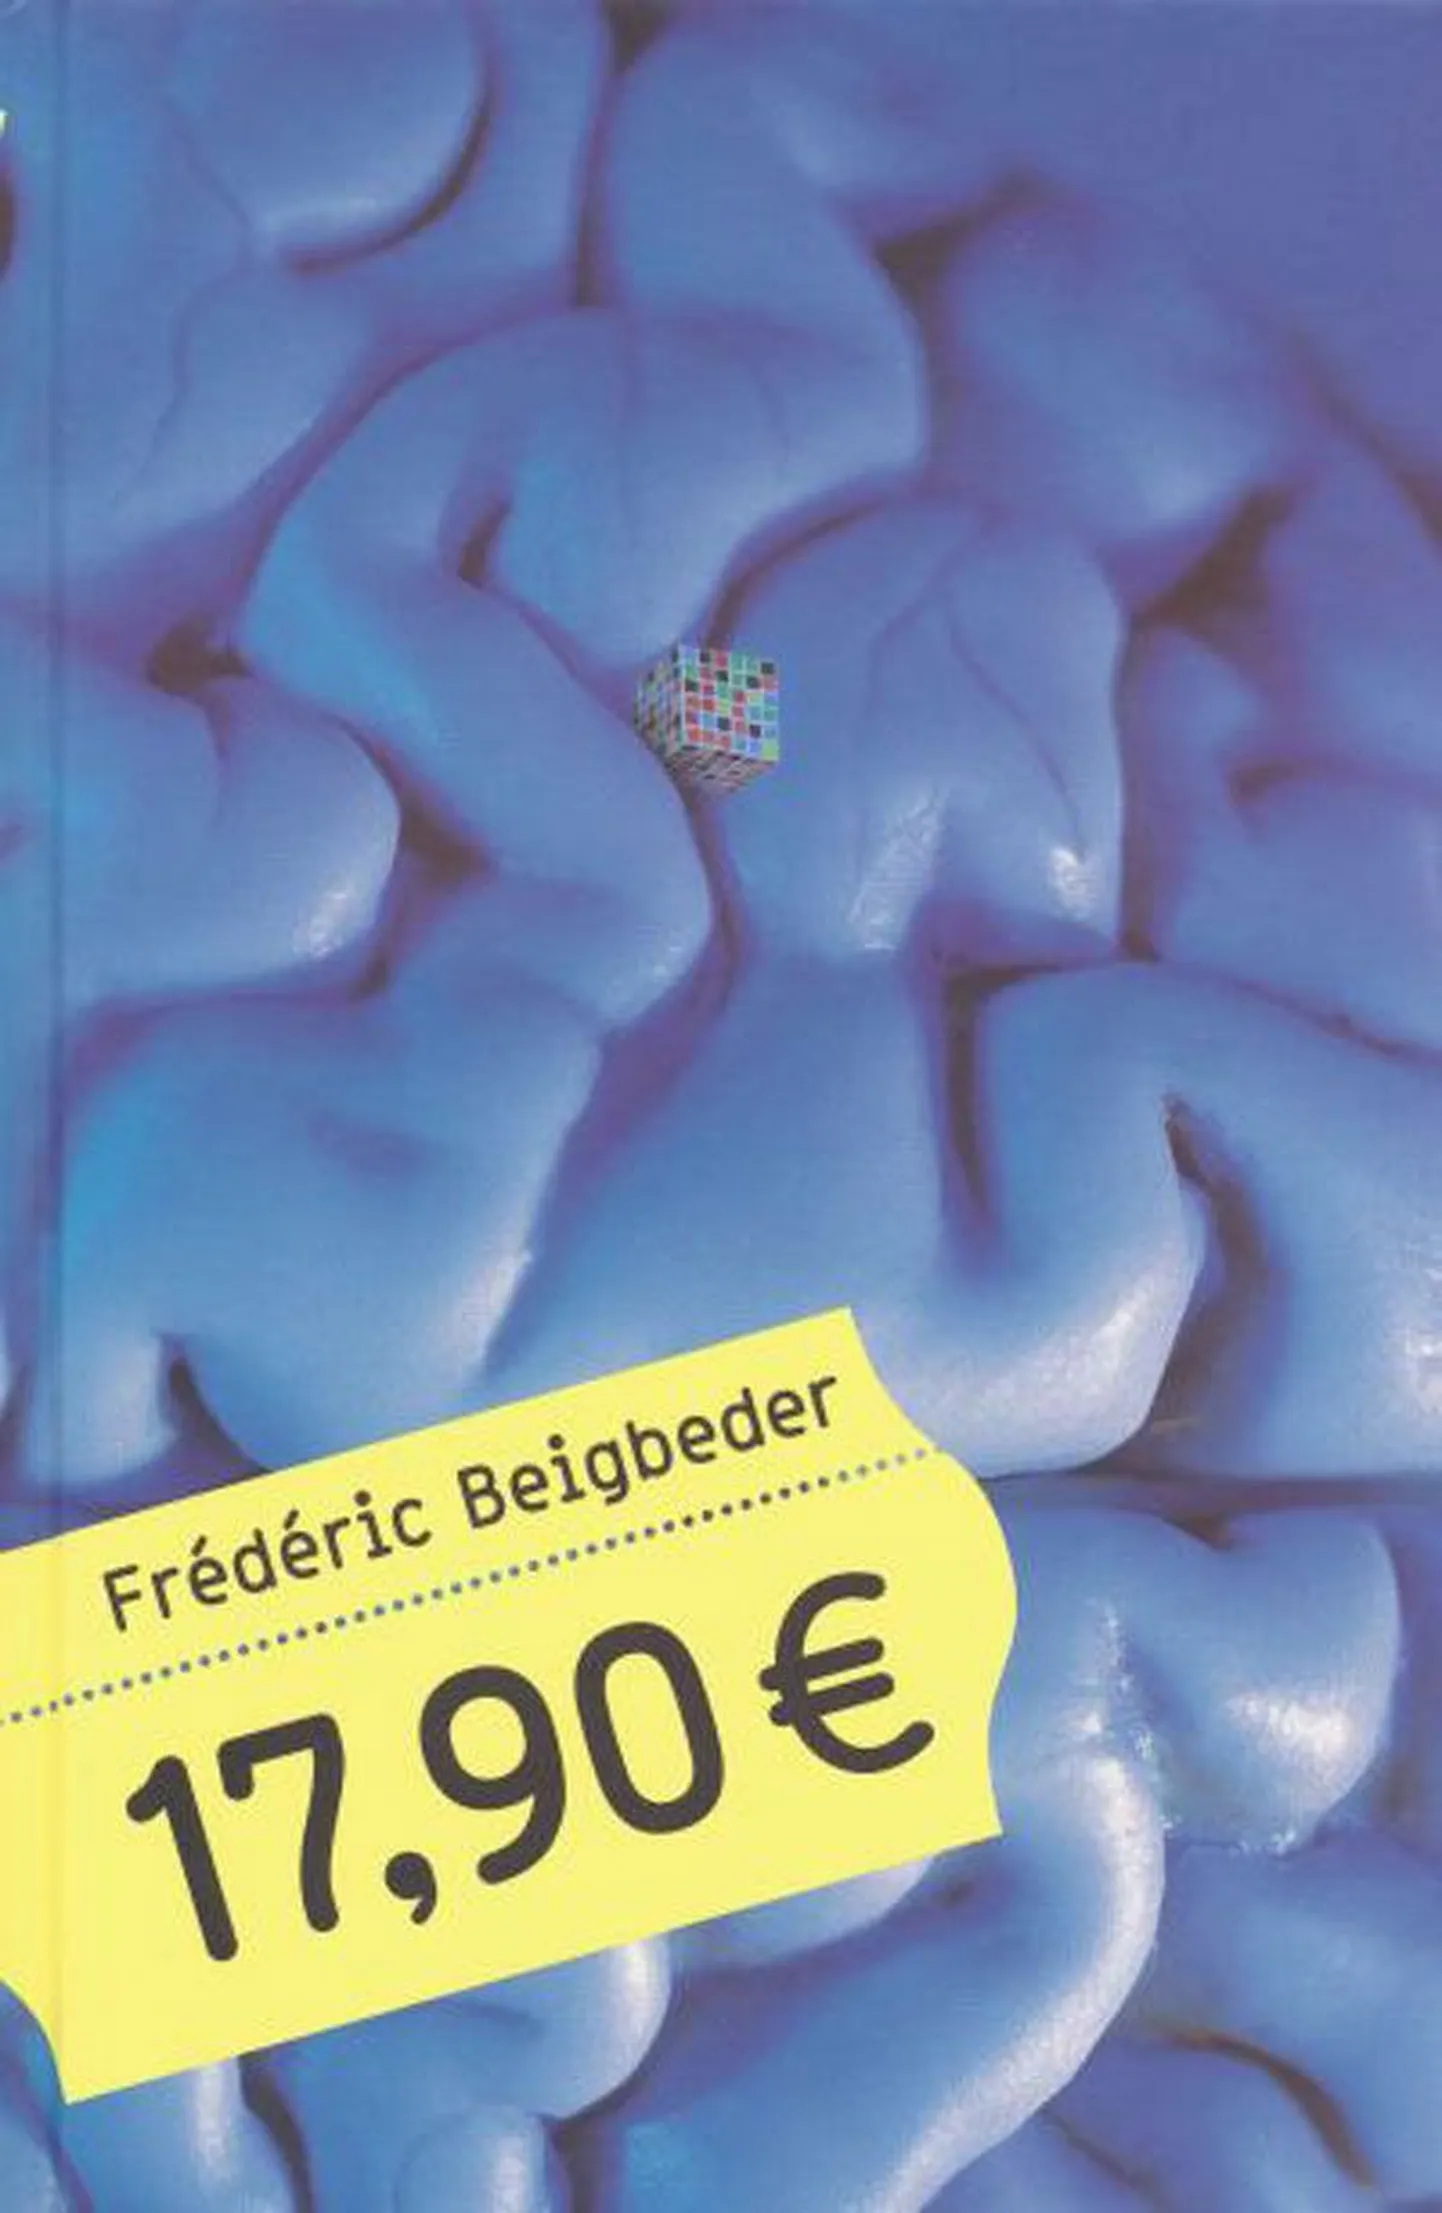 Frédéric ­Beigbeder 
«17,90 € »
Prantsuse ­keelest tõlkinud Anti Saar
Varrak, 235 lk